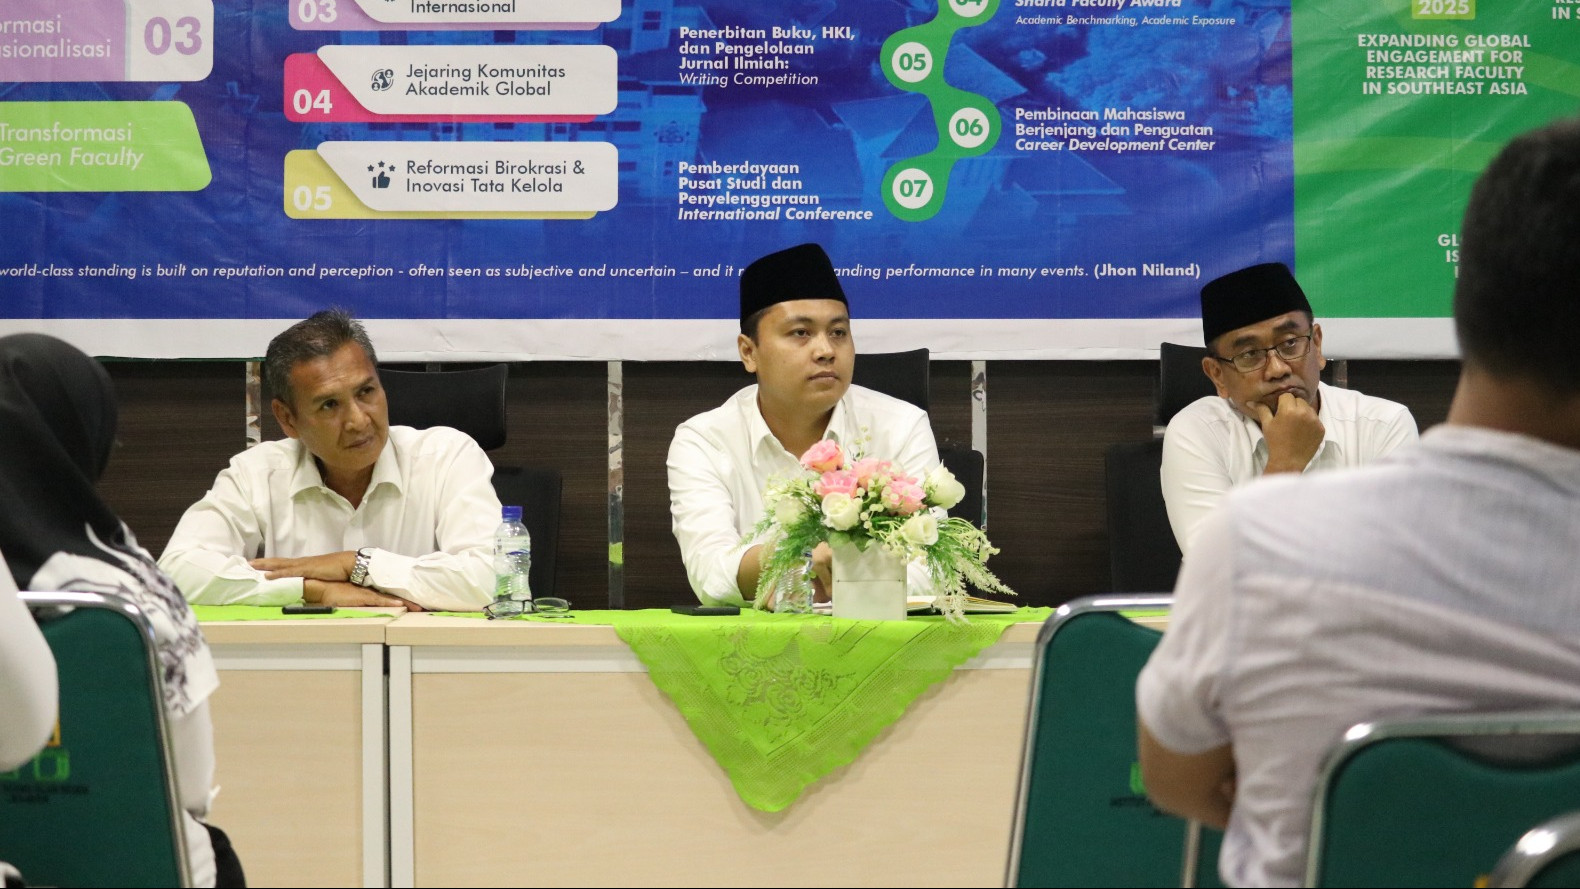 Fakultas Syariah UIN Jember Rilis Overseas Student Mobility Program, Berangkatkan Mahasiswa ke Tiga Negara